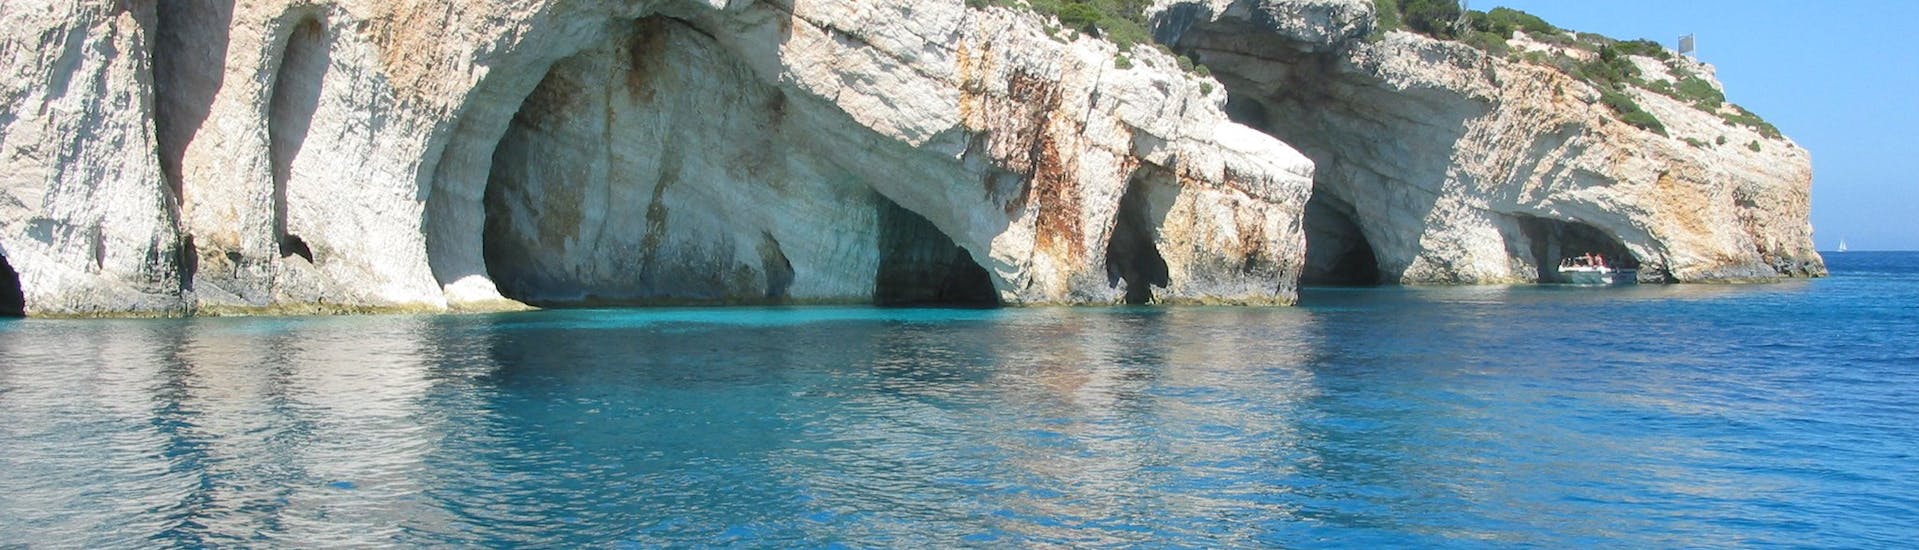 Vue sur les grottes bleues de Zakynthos lors d'une Balade en bateau d'Agios Nikolaos aux Grottes bleues.